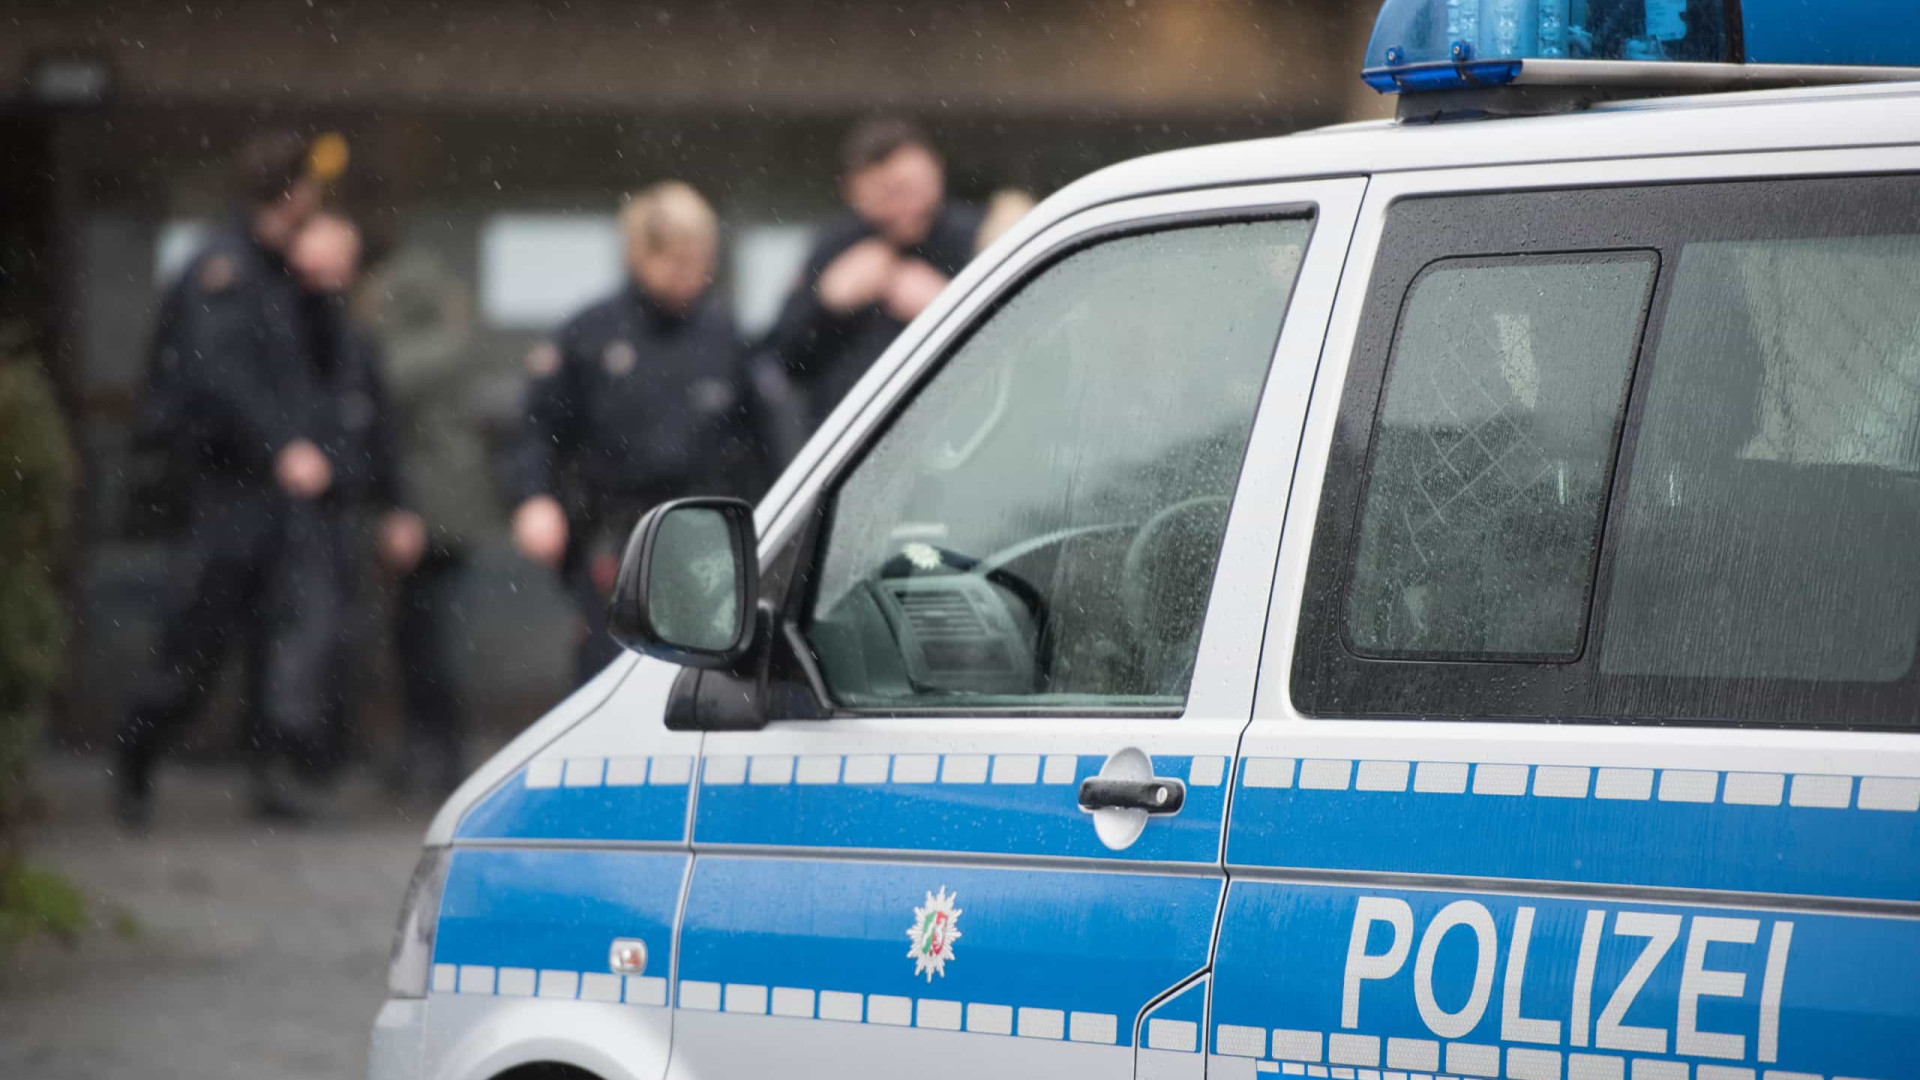 Vários feridos em ataque com ácido num café na Alemanha. Suspeito detido